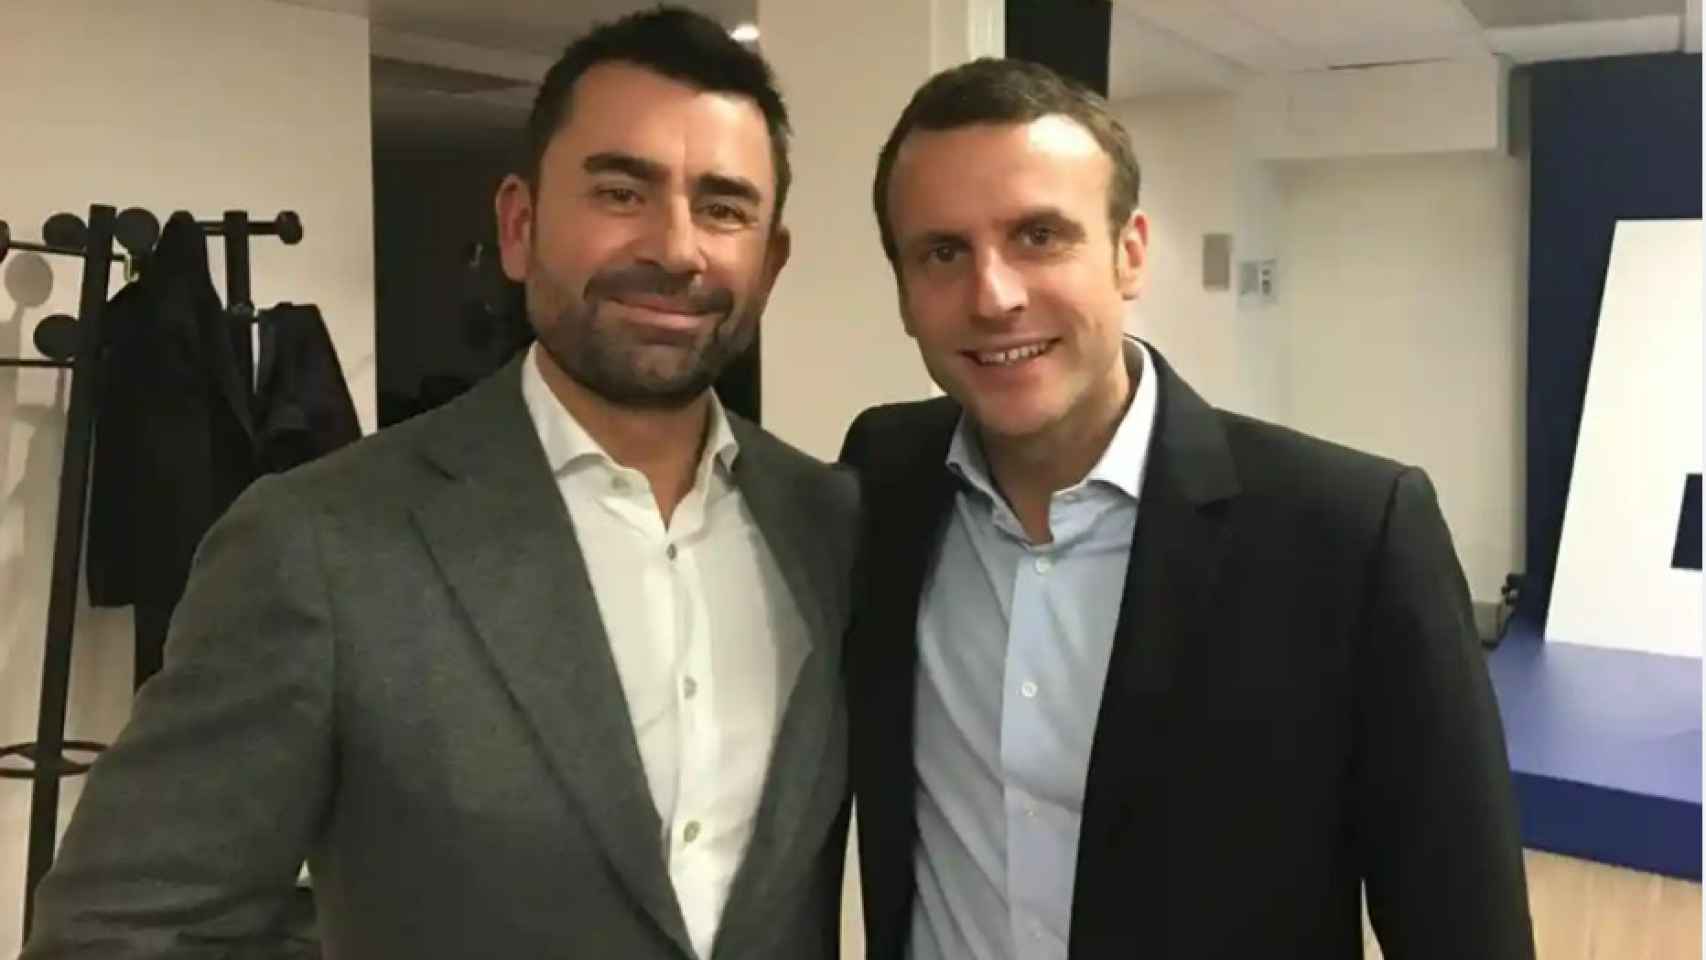 Mark MacGann, filtrador de los 'Uber files' junto al presidente francés Emmanuel Macron.